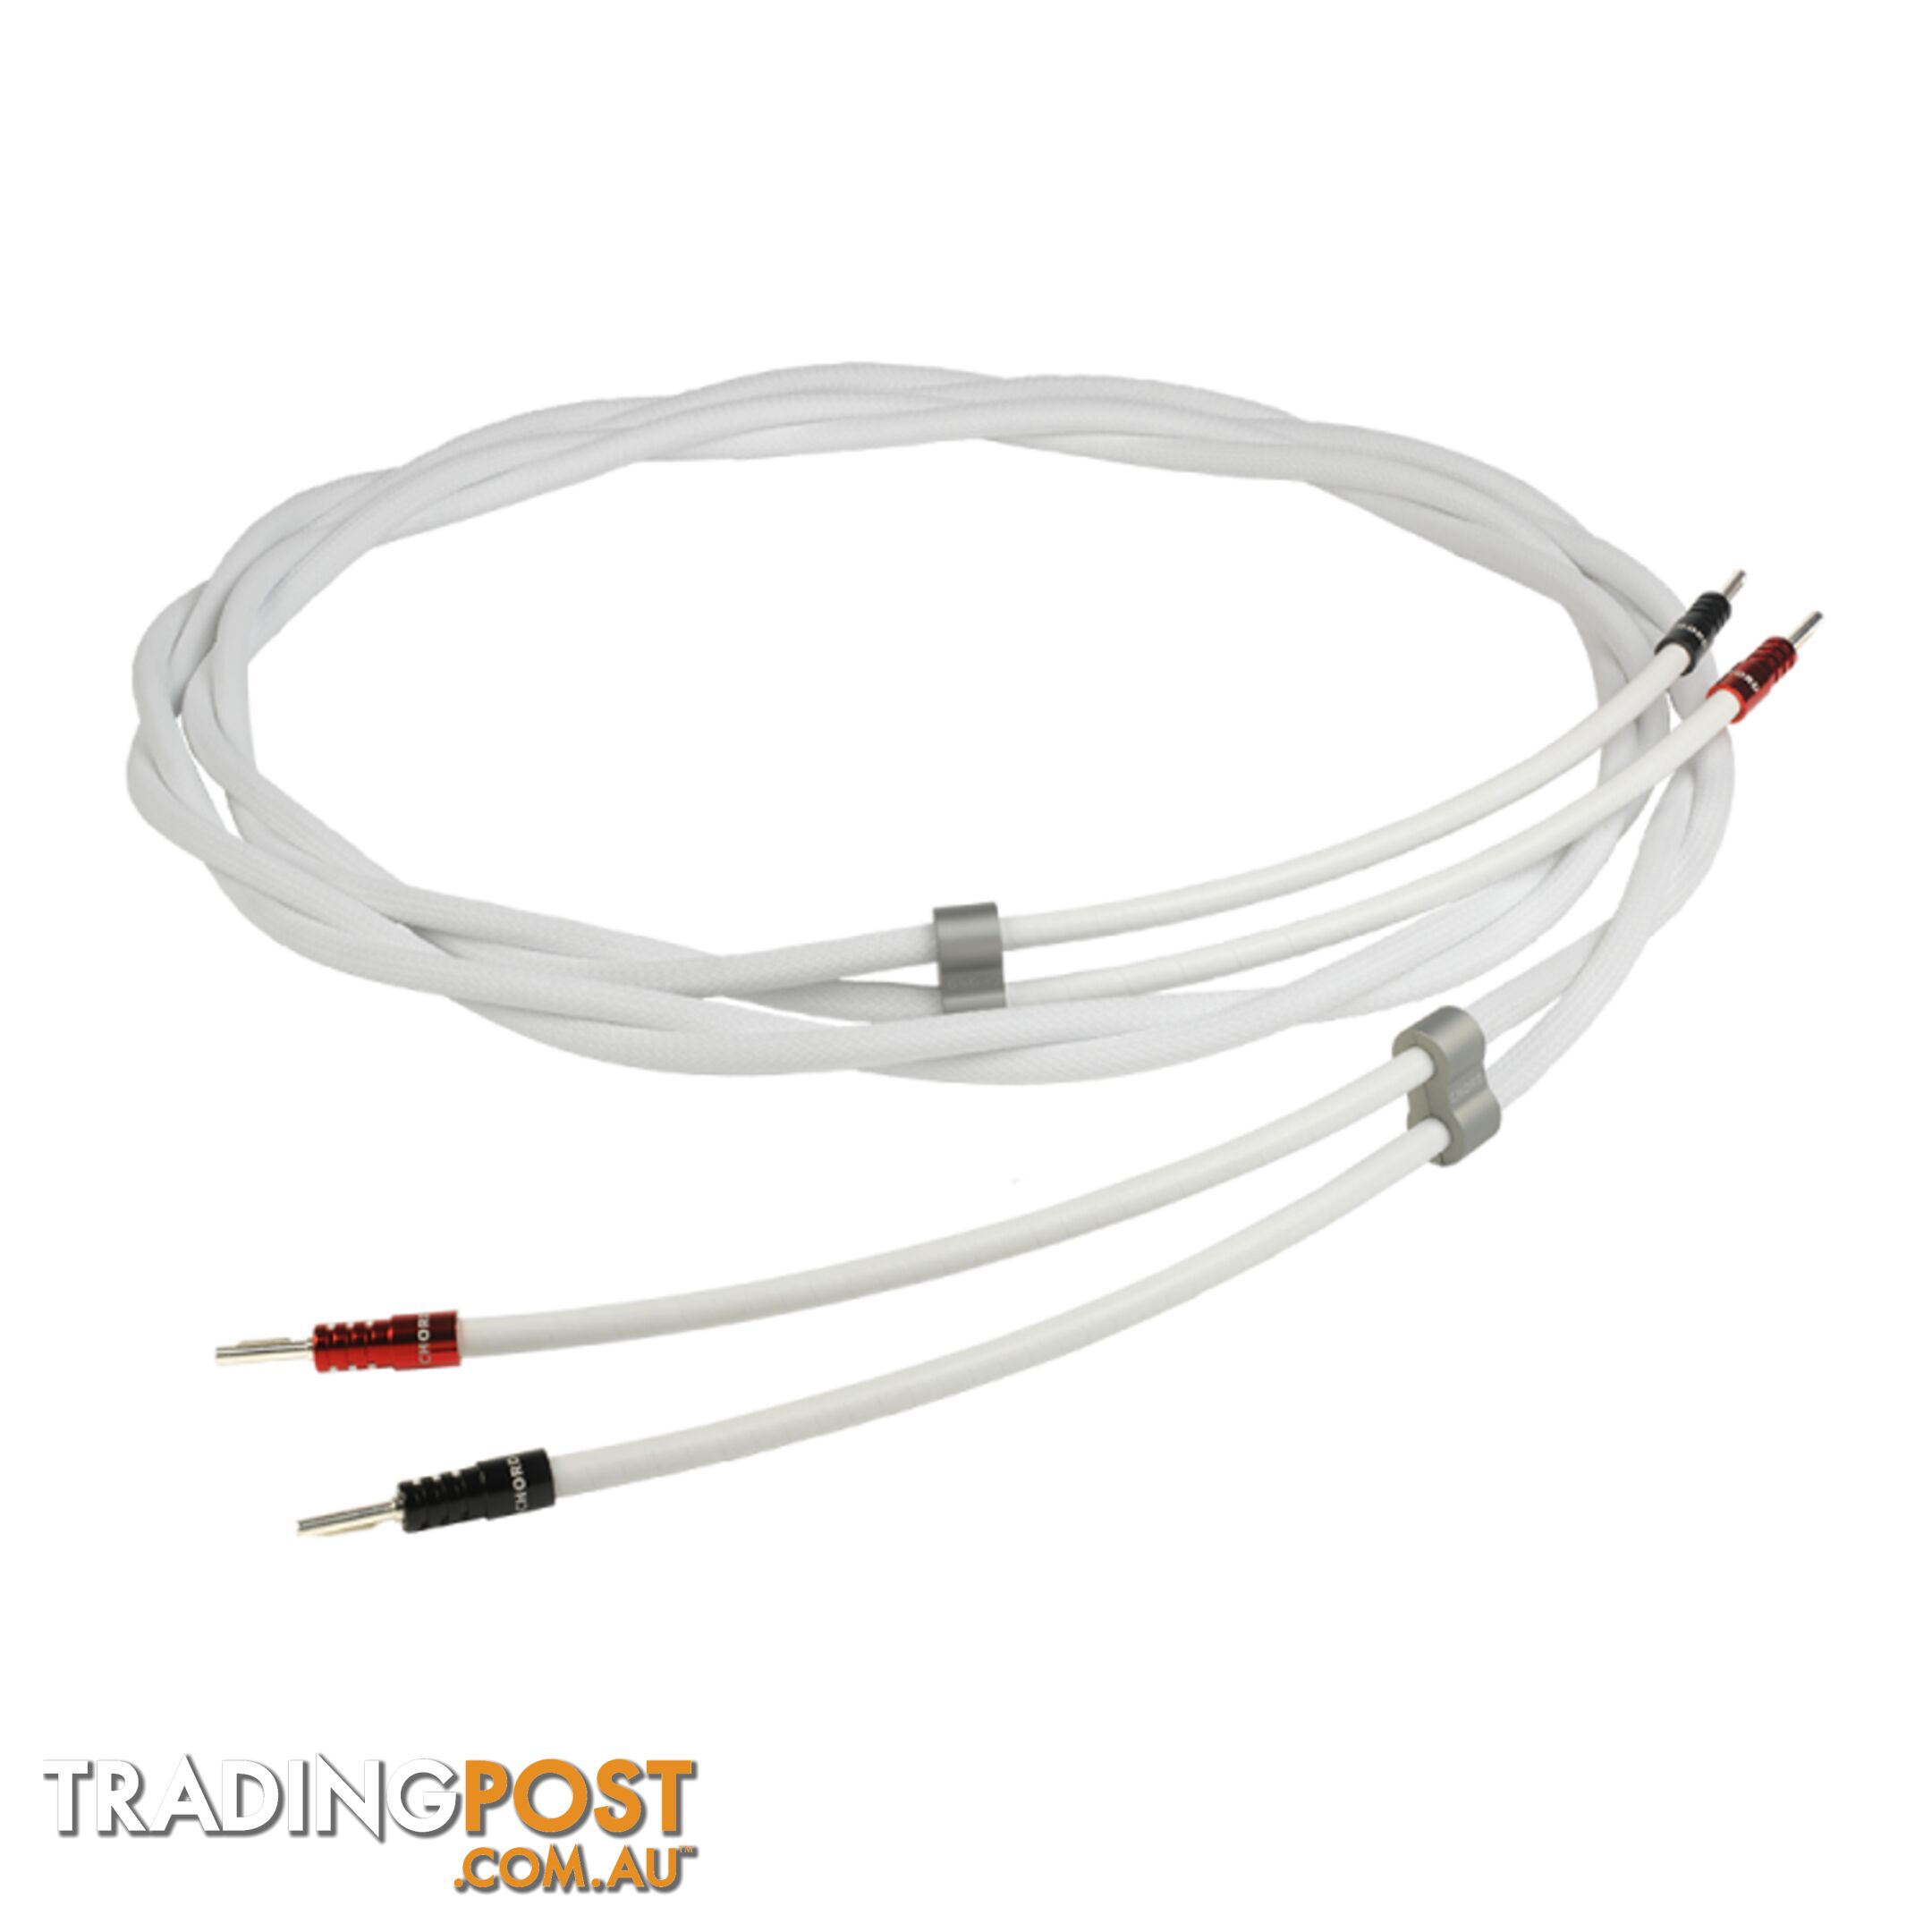 Chord Sarum T Speaker Cable 2m (Pair)